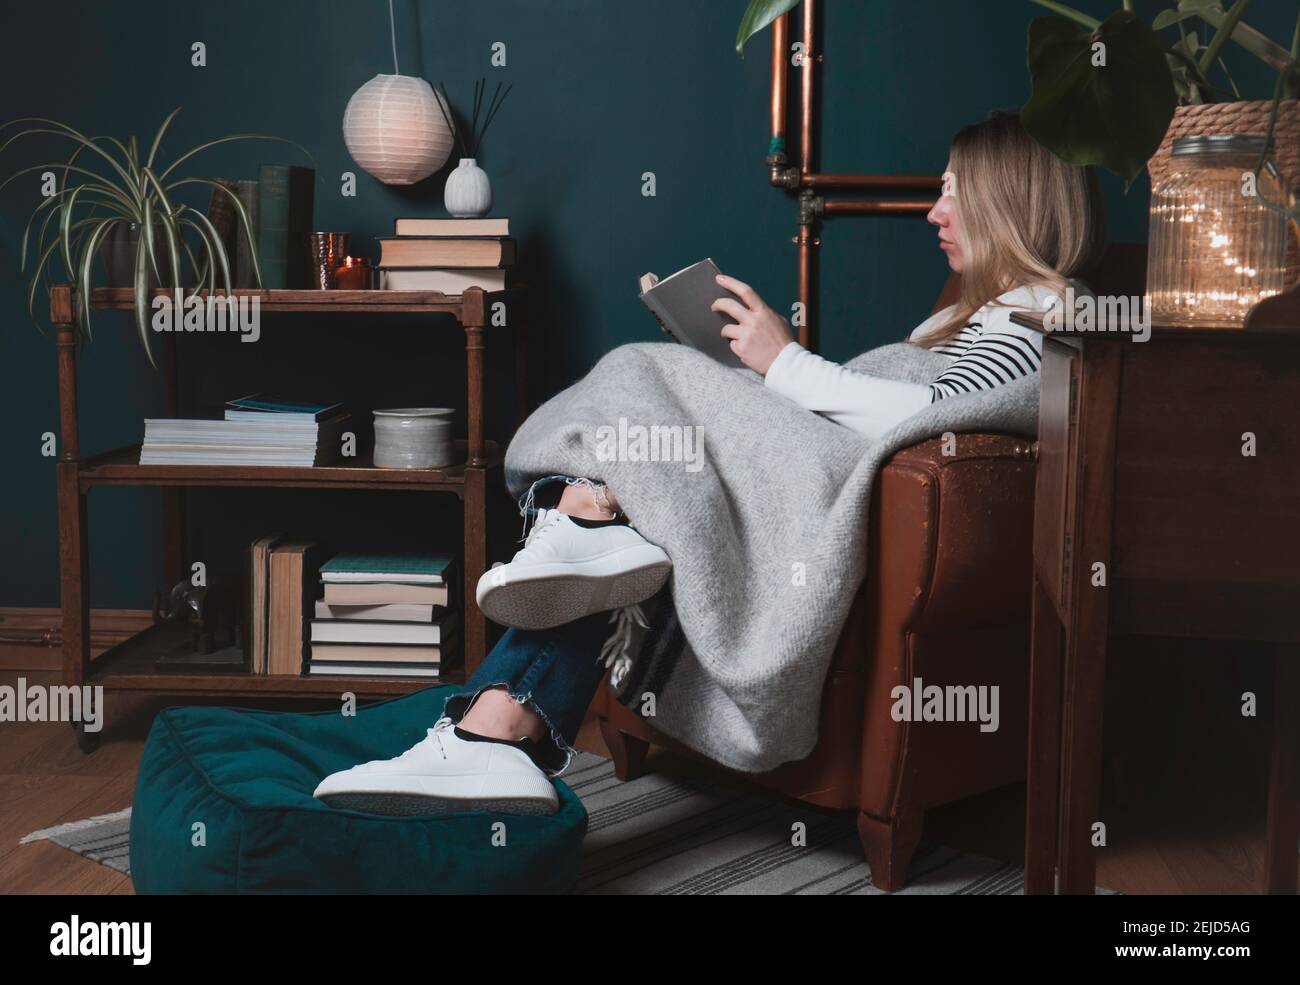 Une jeune femme caucasienne à la maison s'est emmêlée dans une couverture sur une chaise en cuir dans la salle de séjour ou a étudié la lecture d'un livre. Atmosphère confortable et détendue avec le contemplaa Banque D'Images